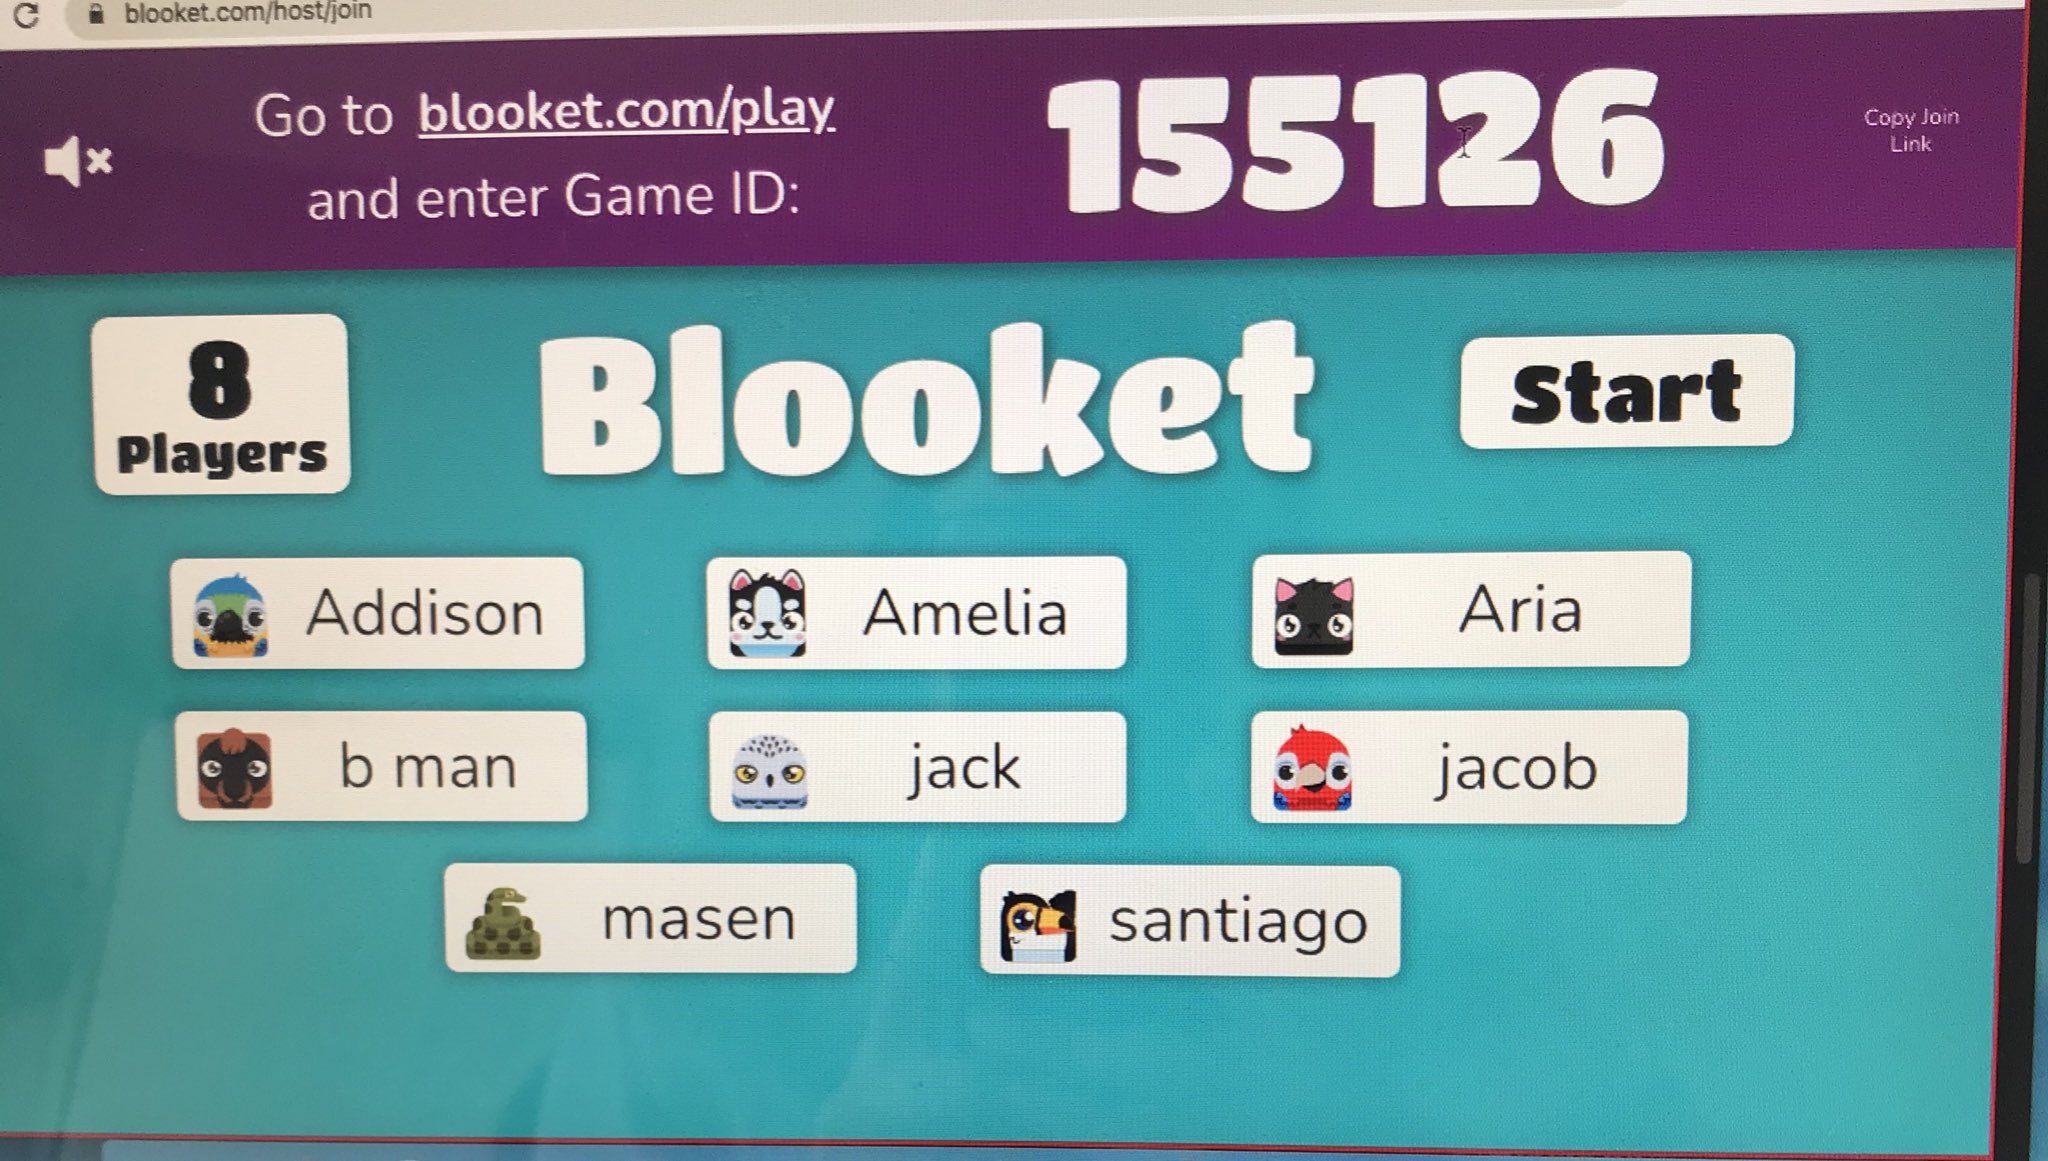 Play blooket.com Play Blooket